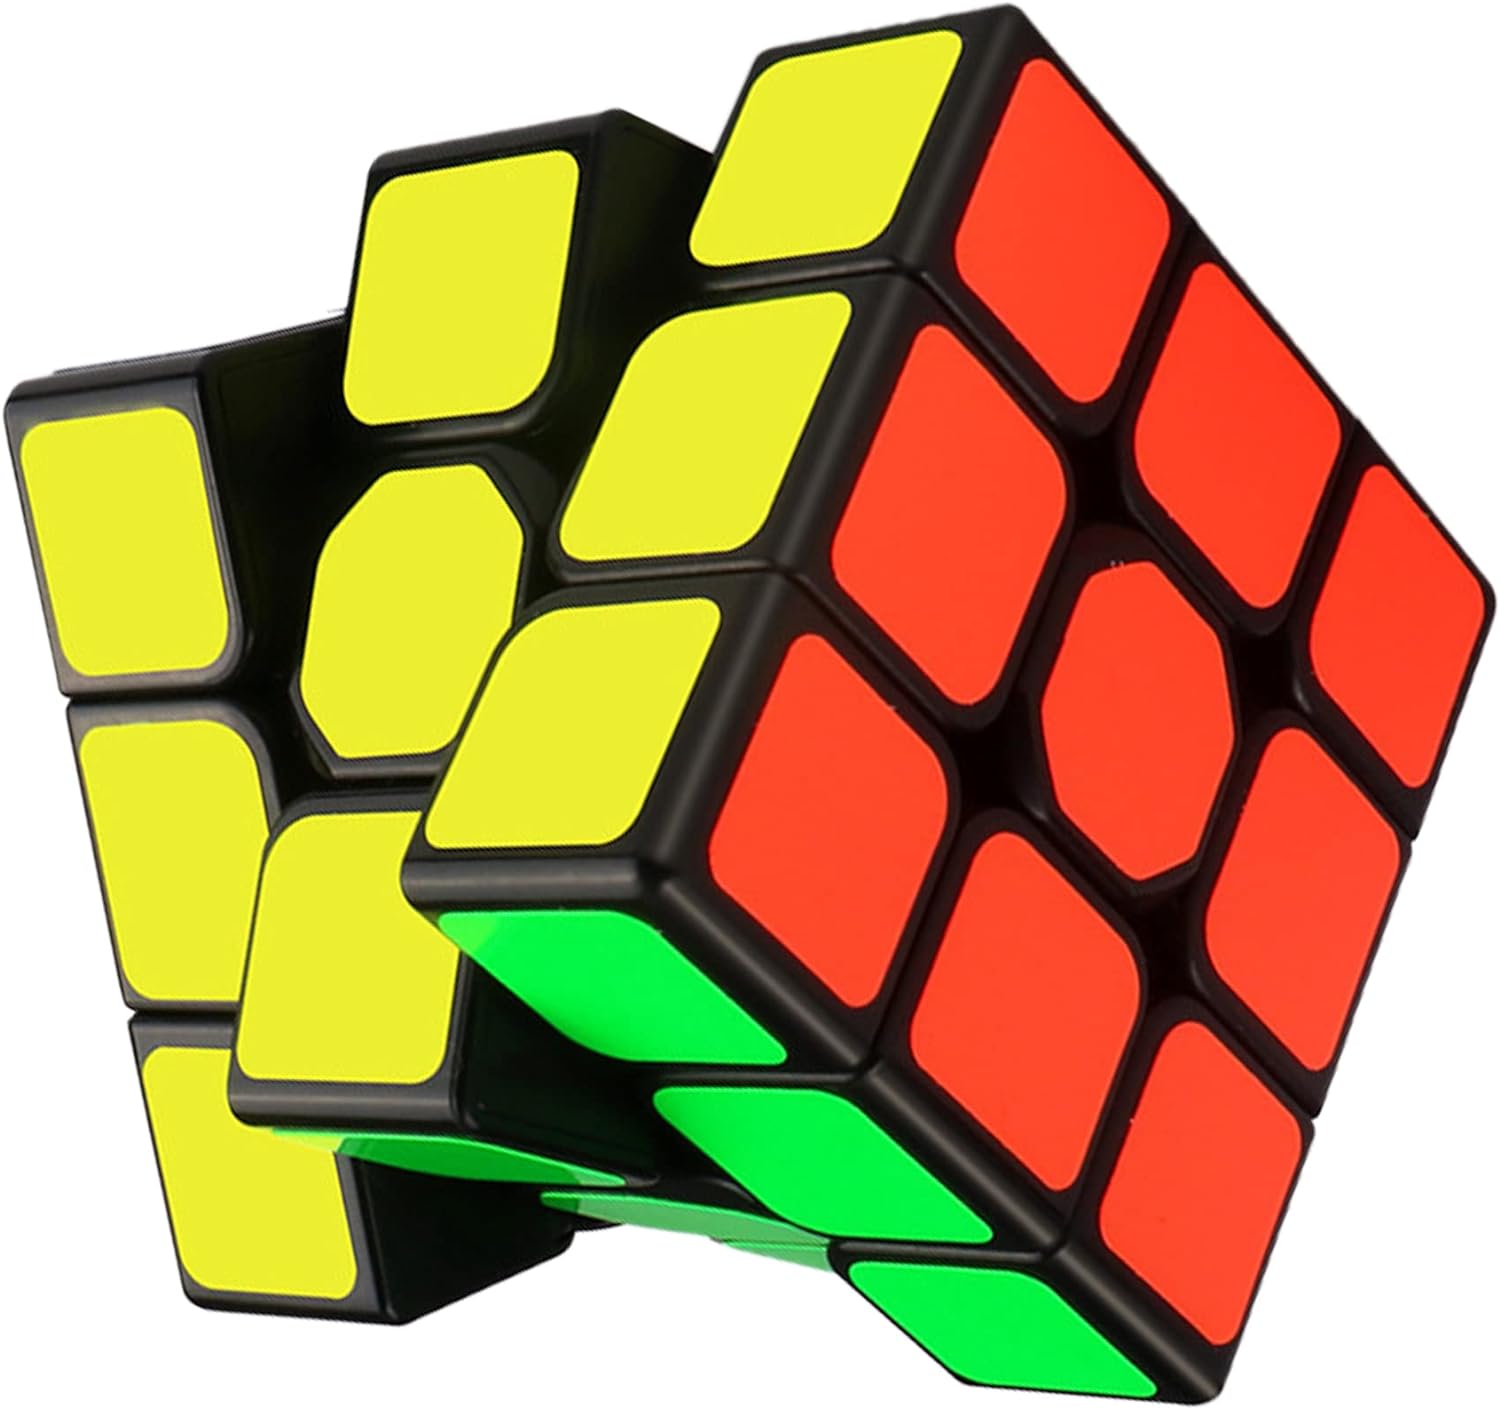 スタンダードなマス目の数を求めるなら「3x3x3」のルービックキューブ